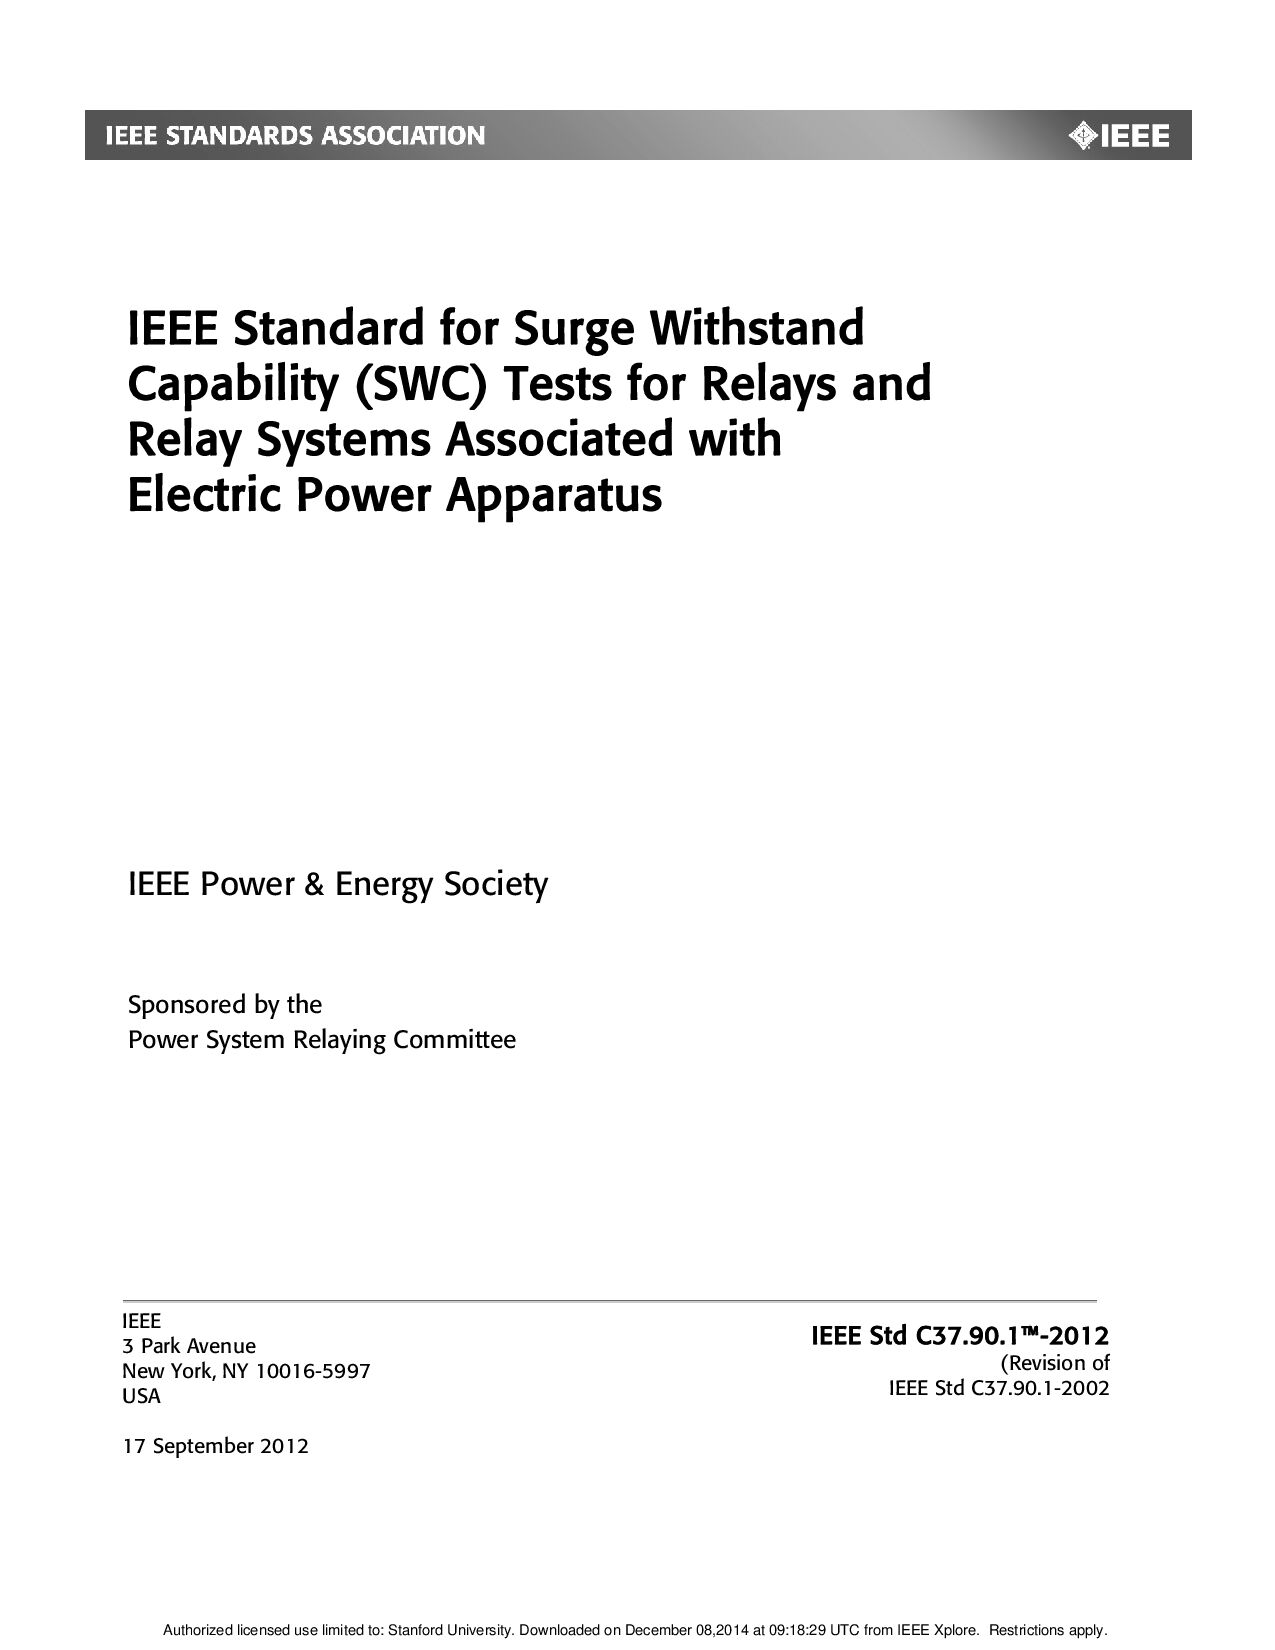 IEEE Std C37.90.1-2012